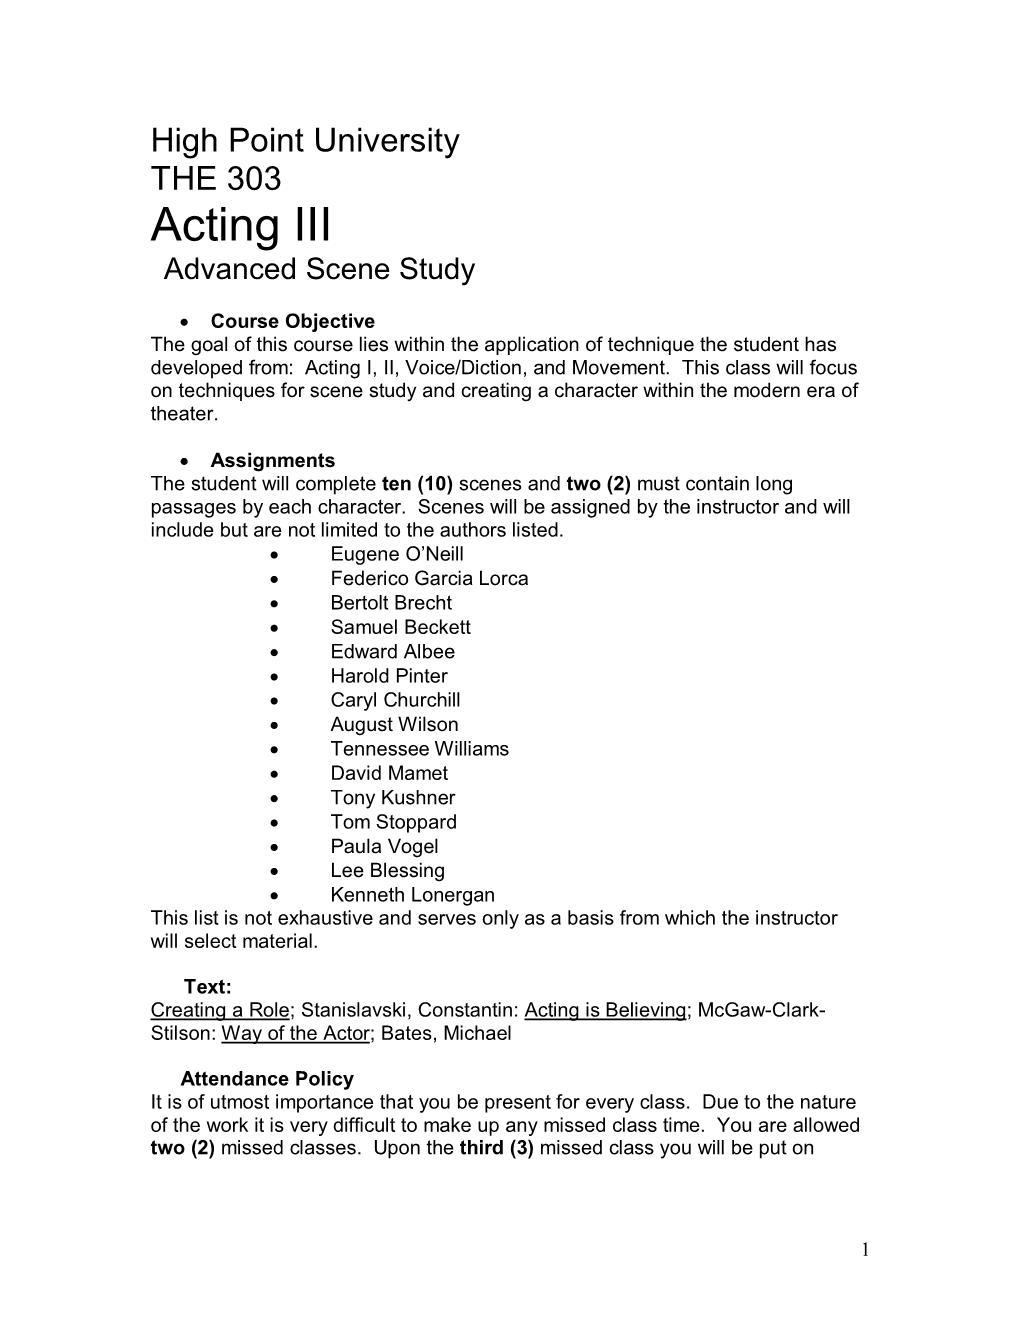 Acting III Advanced Scene Study